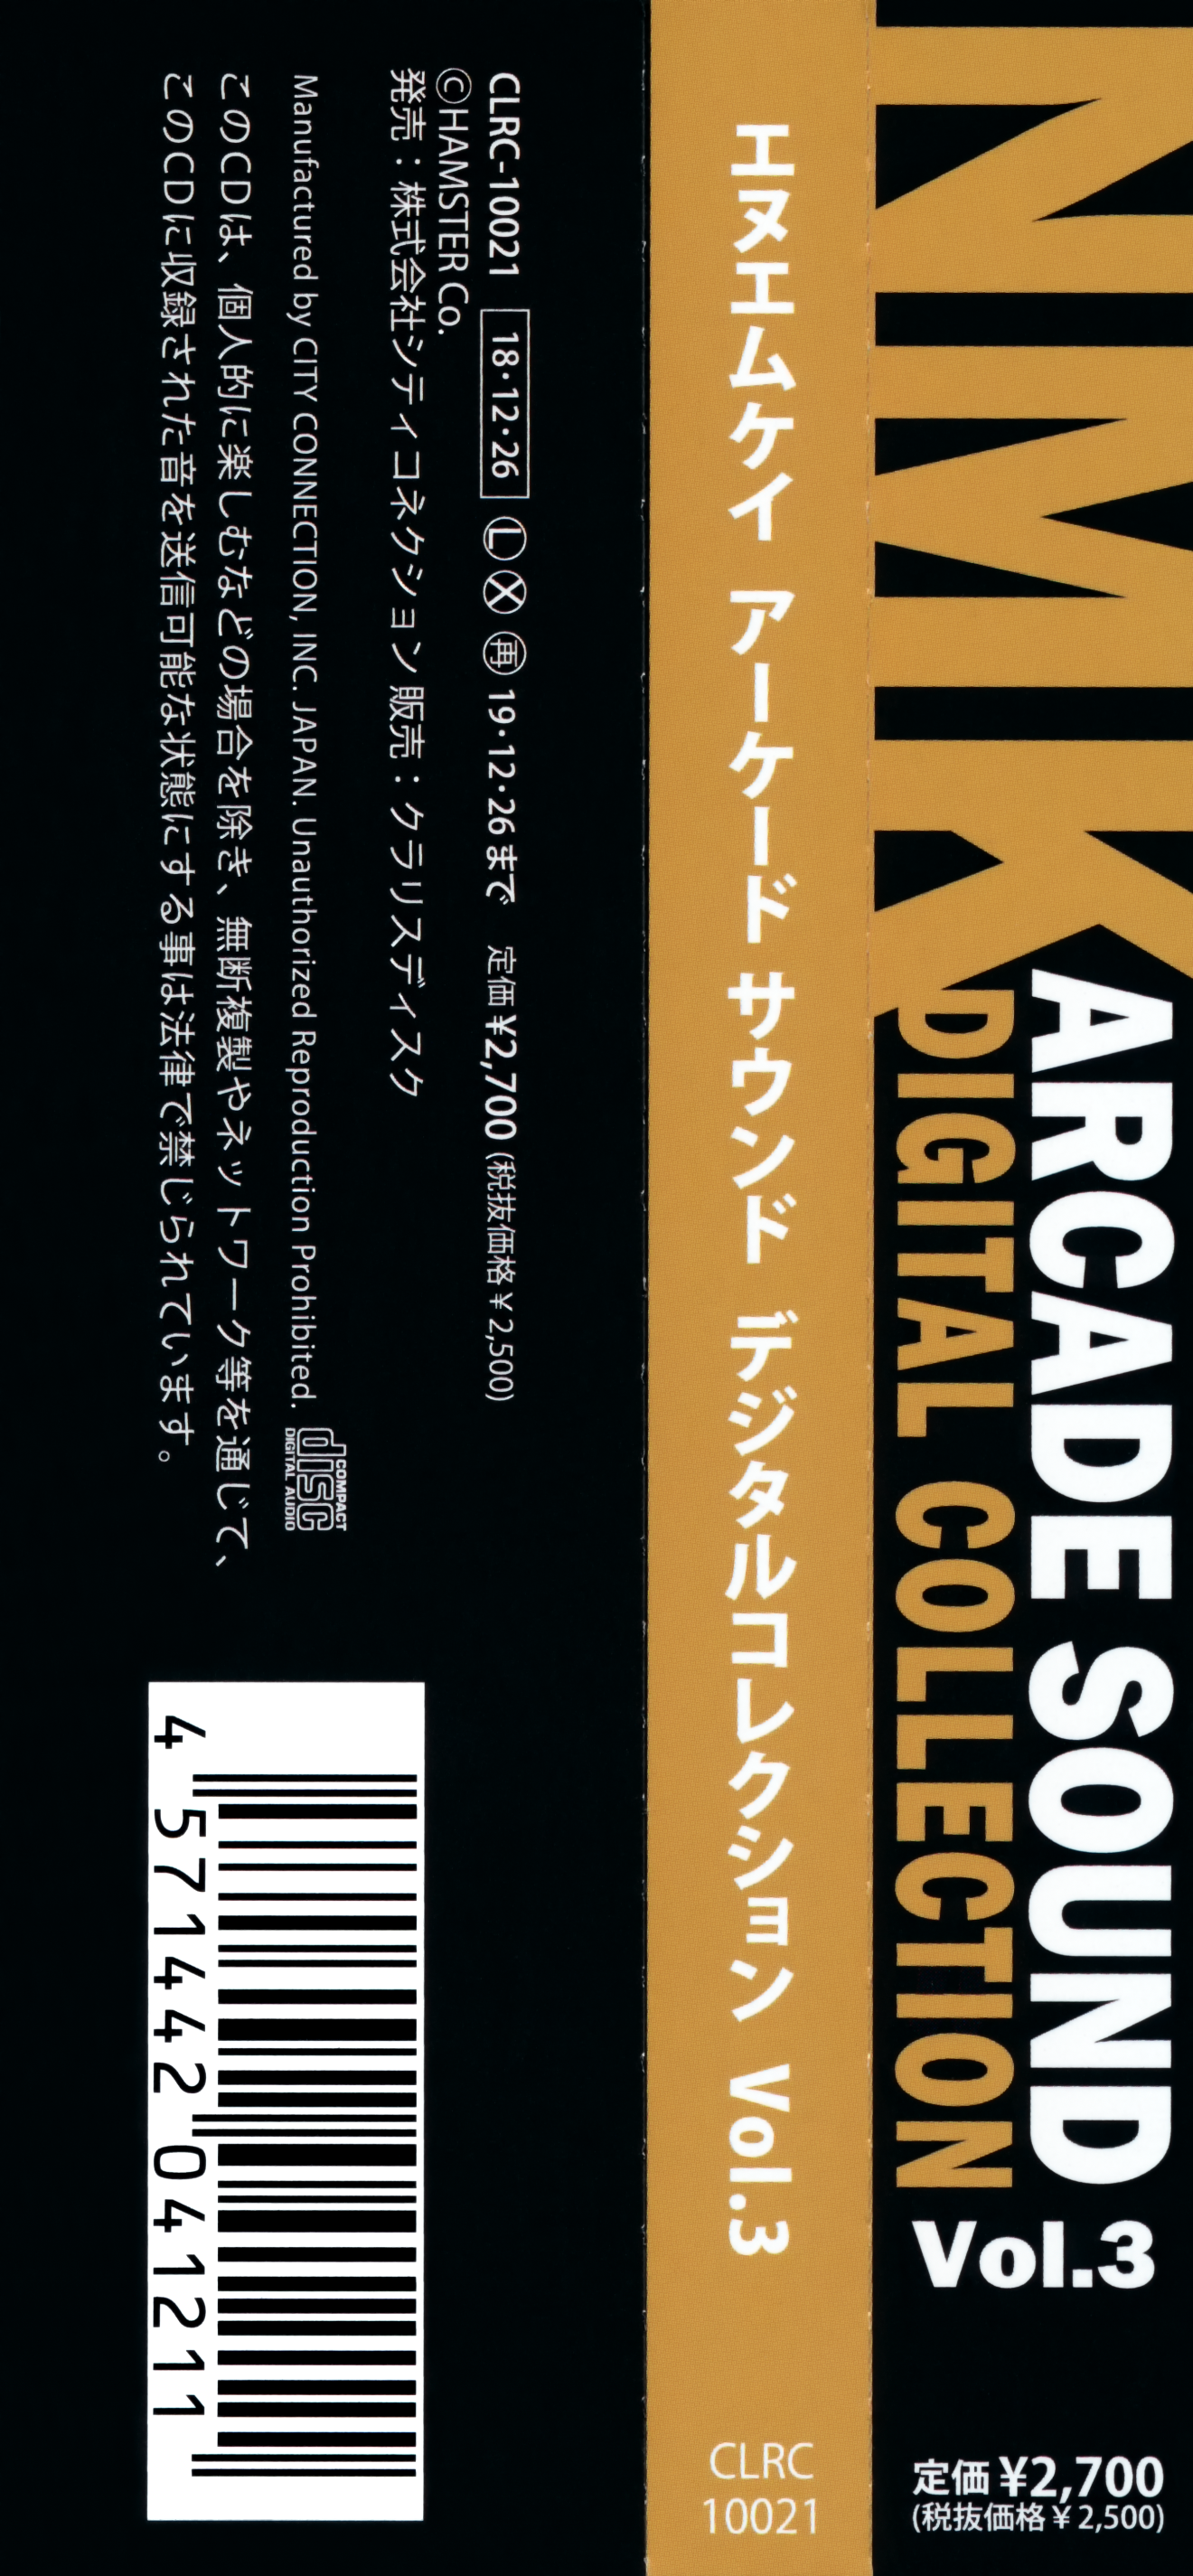 NMK CD NMK ARCADE SOUND DIGITAL COLLECTION Vol.3